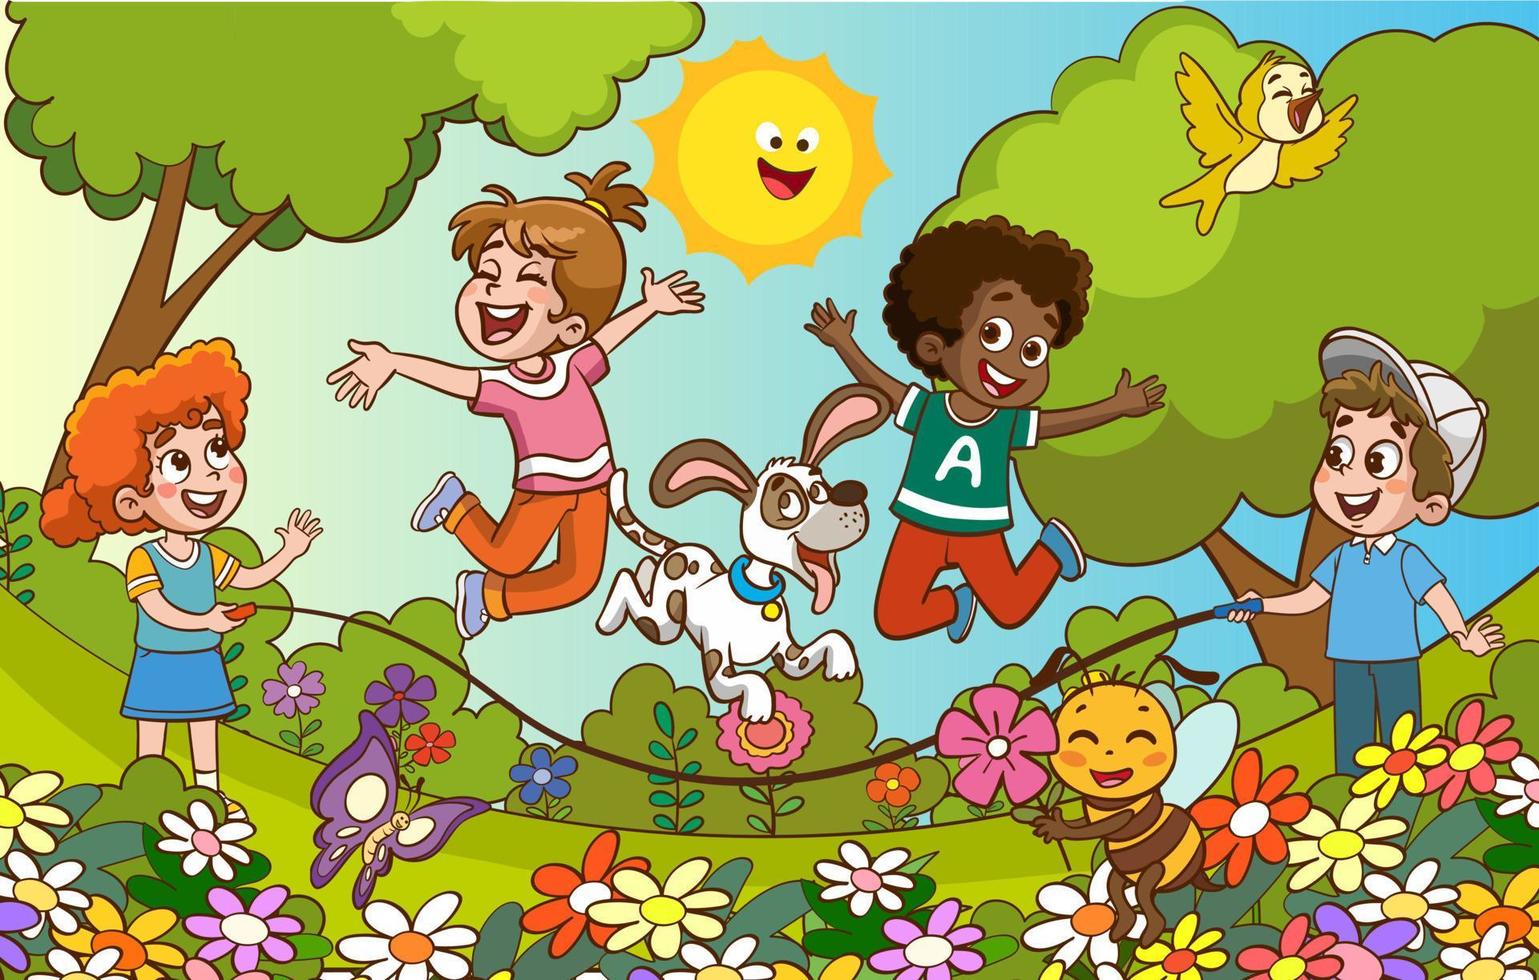 glücklich wenig Kinder haben Spaß. Vektor Illustration von süß Kinder Springen Seil